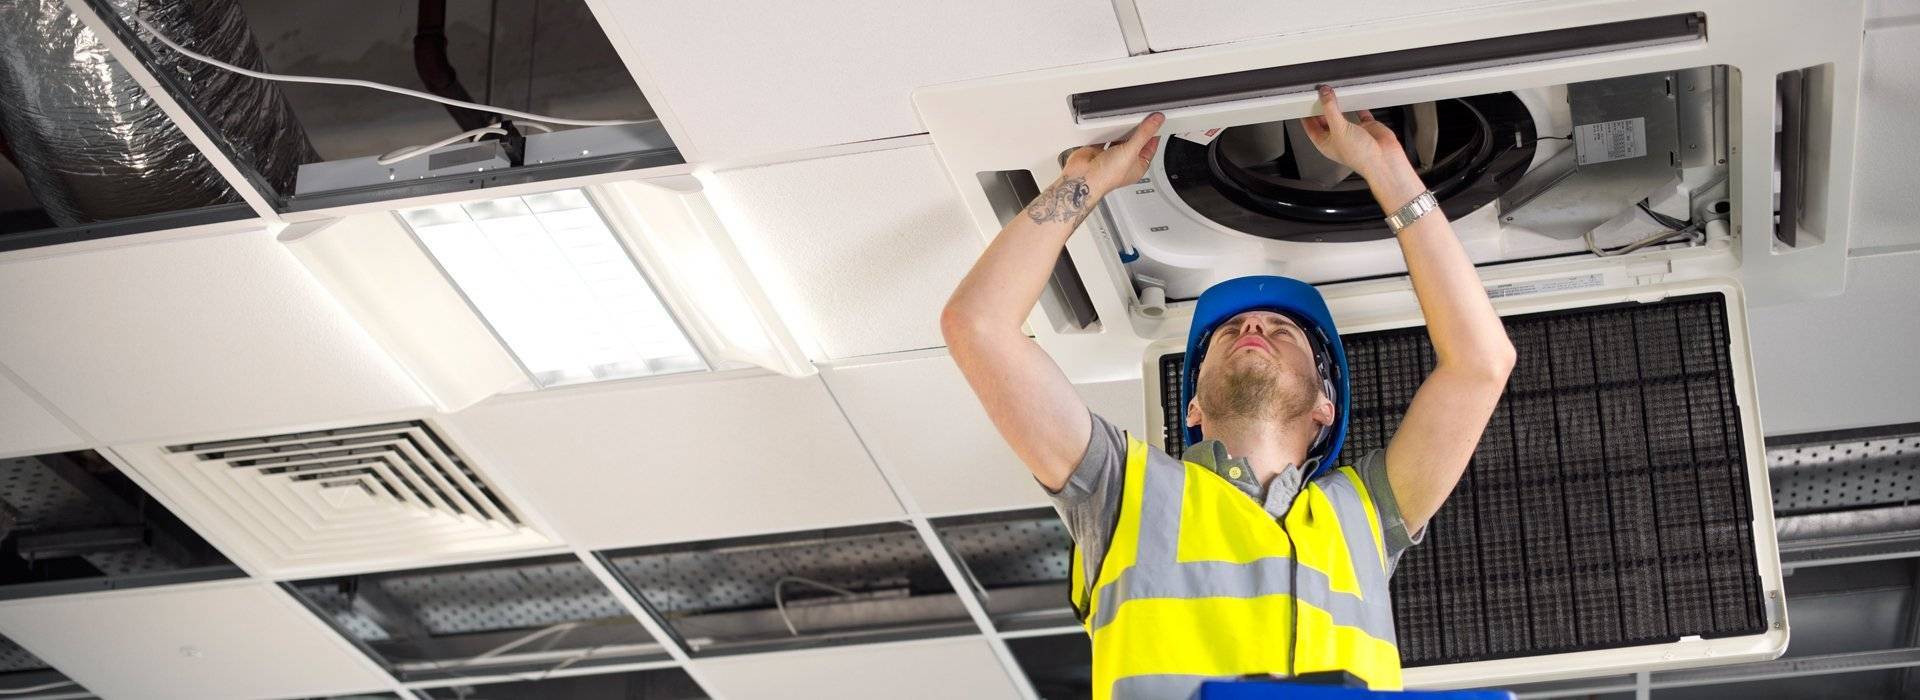 Техническое обслуживание систем вентиляции от компании «климатконтроль» — стоимость работ